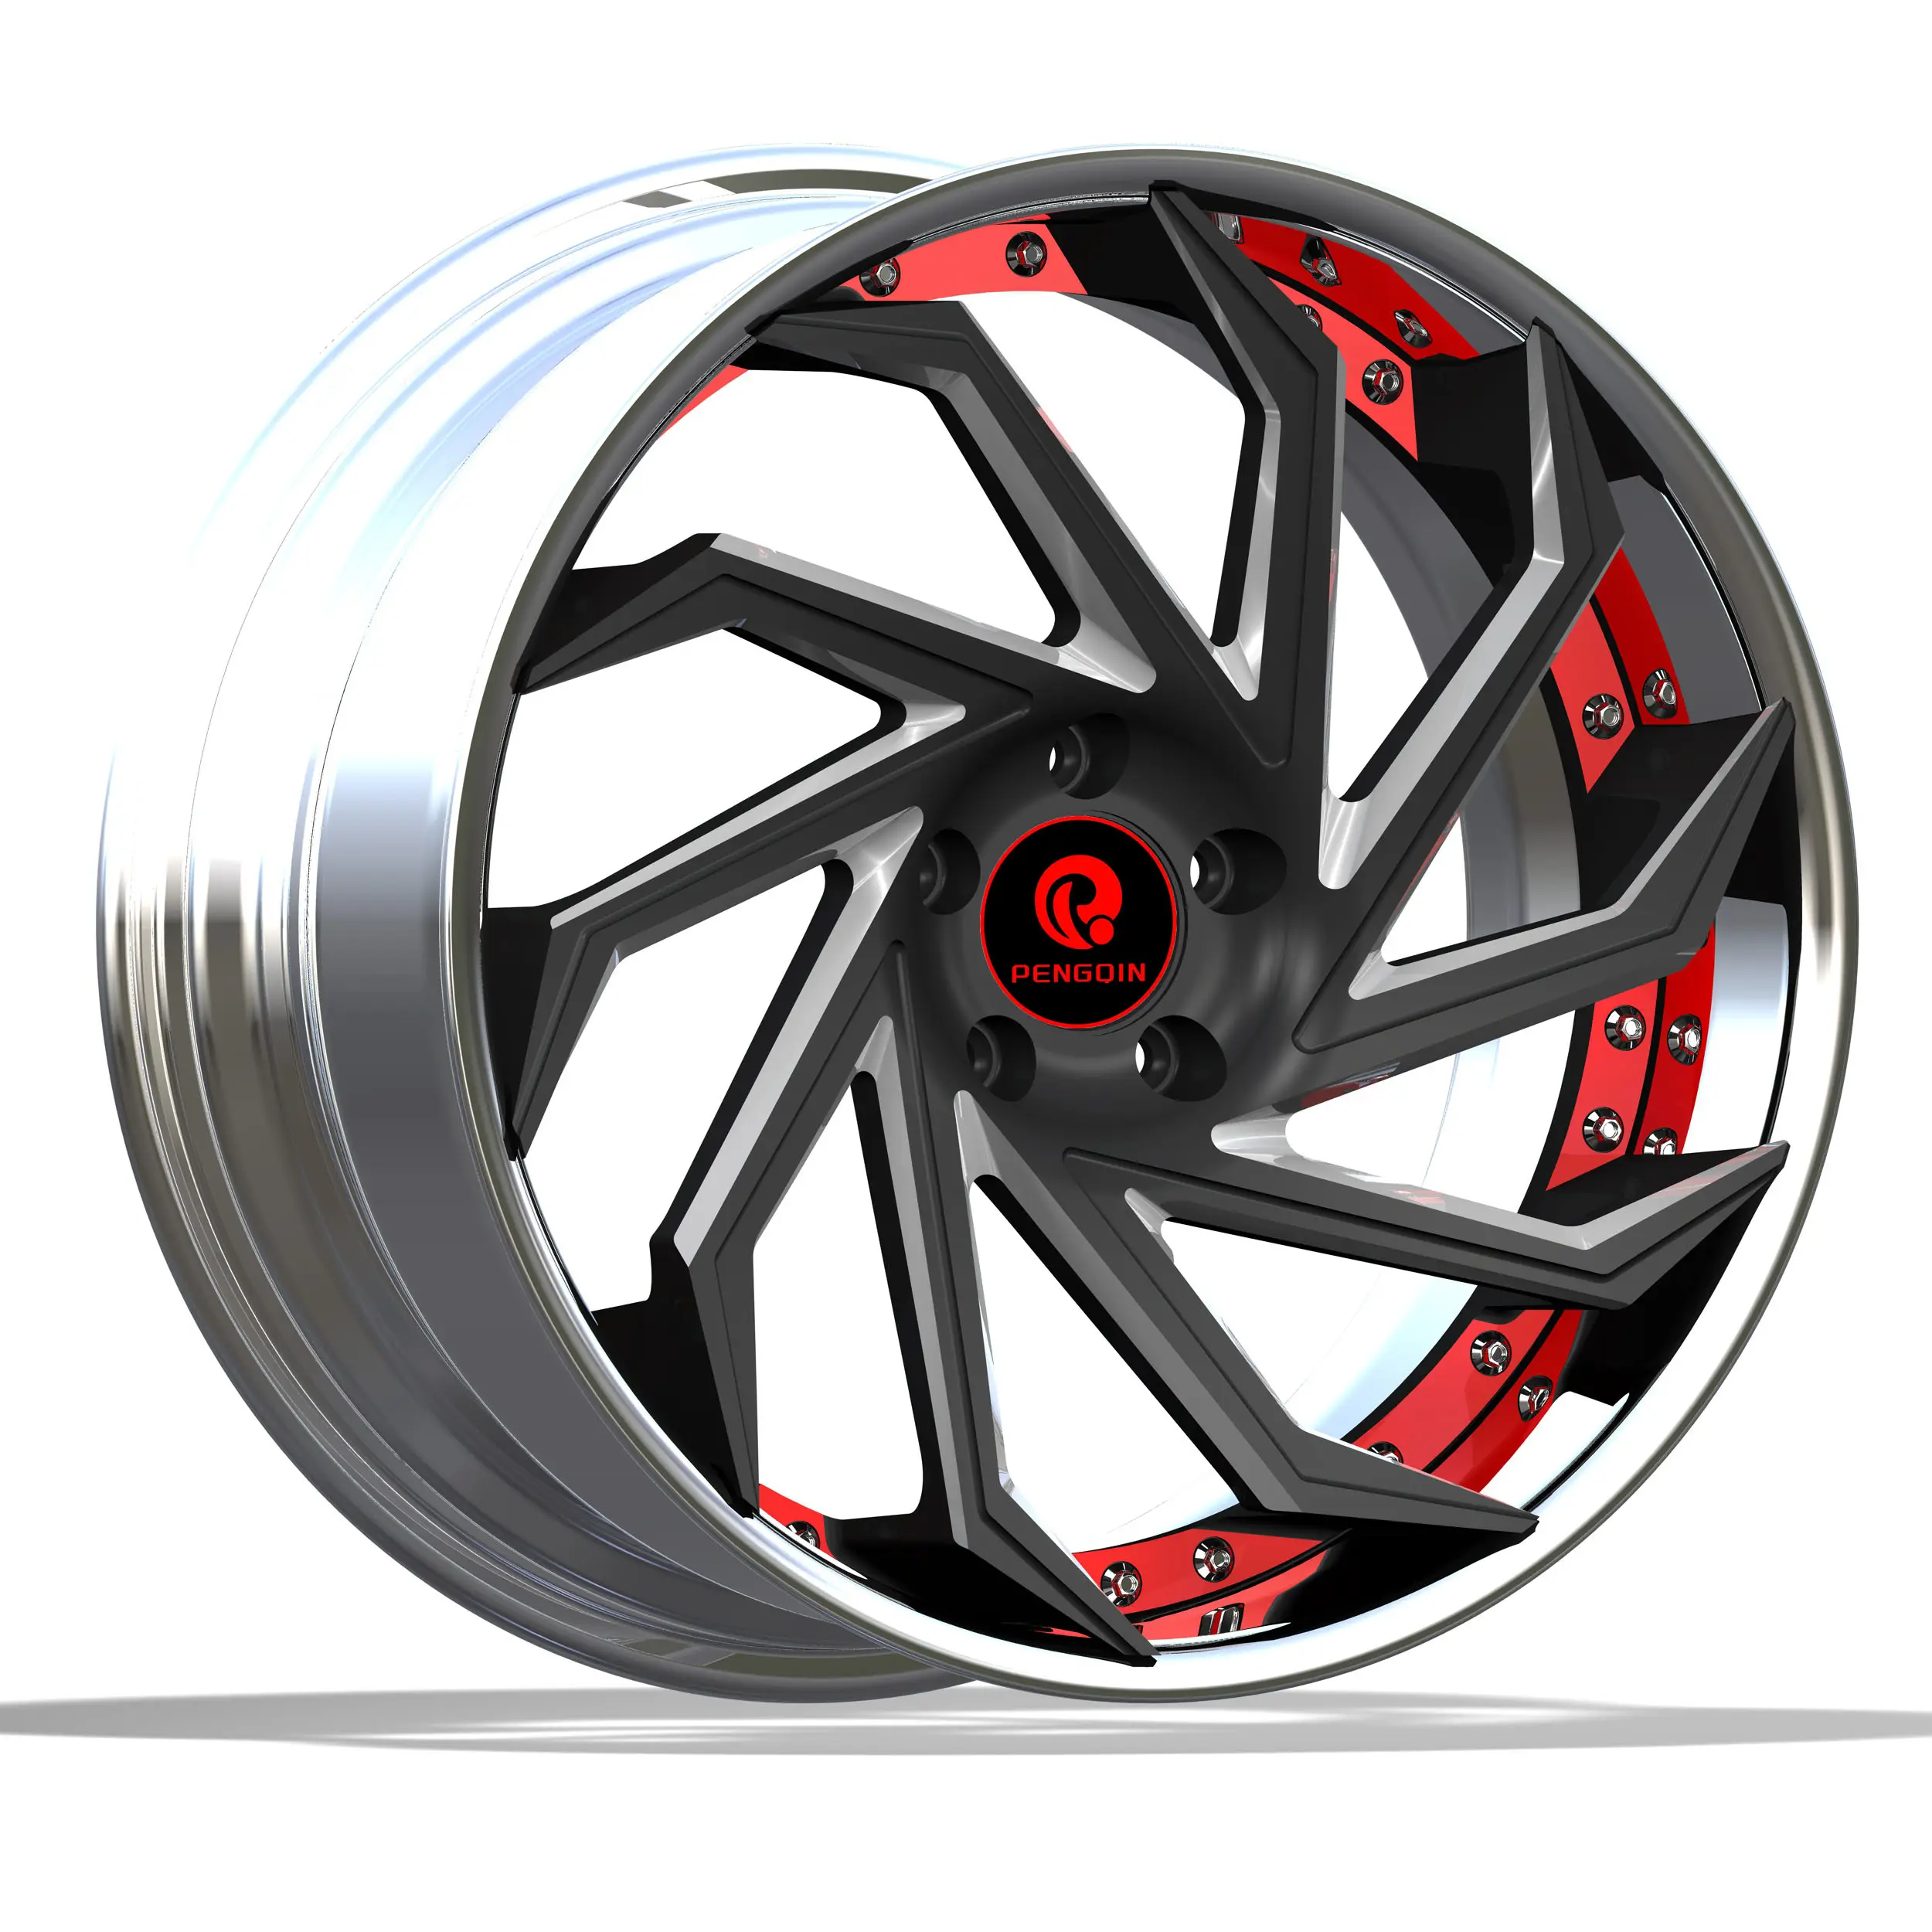 Jant spinner tekerlekler siyah ve kırmızı ralli alaşım jantlar 16x10 4x108 5x150 8x165.1 18x9.5 5x114.3 tekerlekler